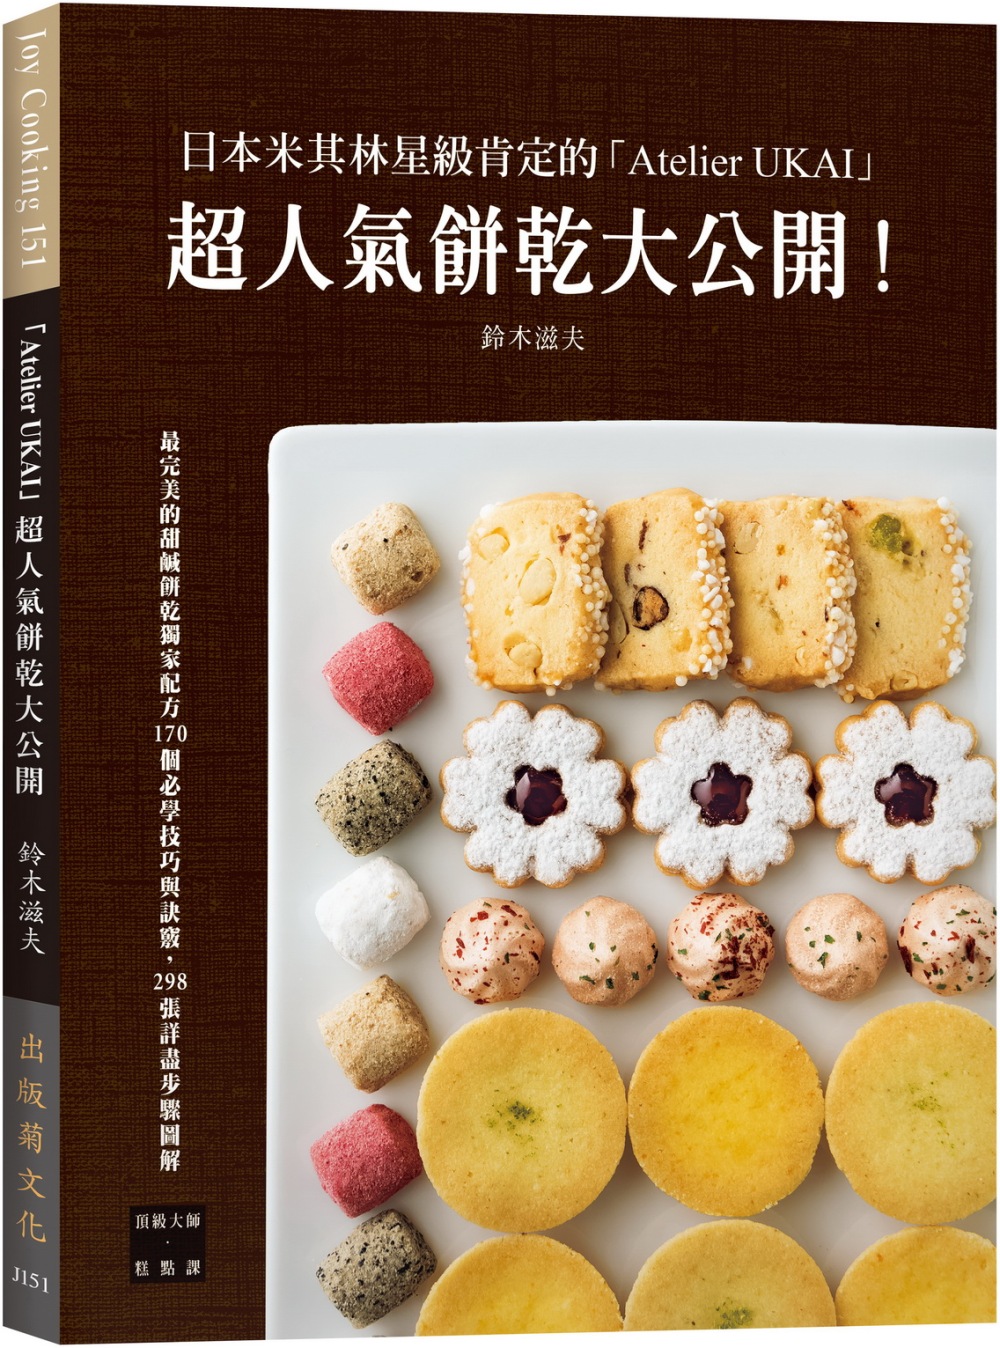 日本米其林星級肯定的「Atelier UKAI」人氣餅乾大公...